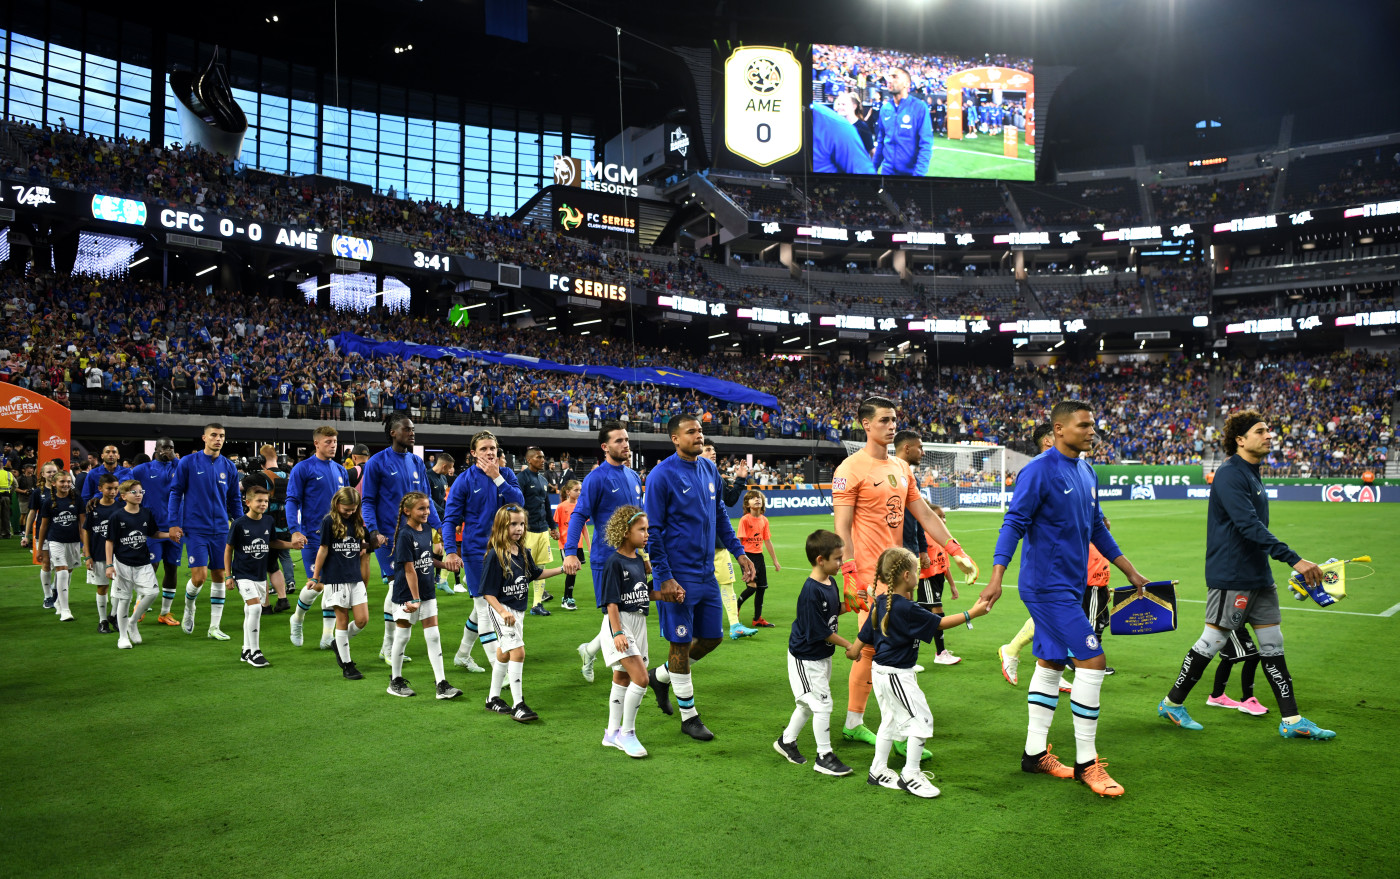 Chelsea tops Club America at Allegiant Stadium, Soccer